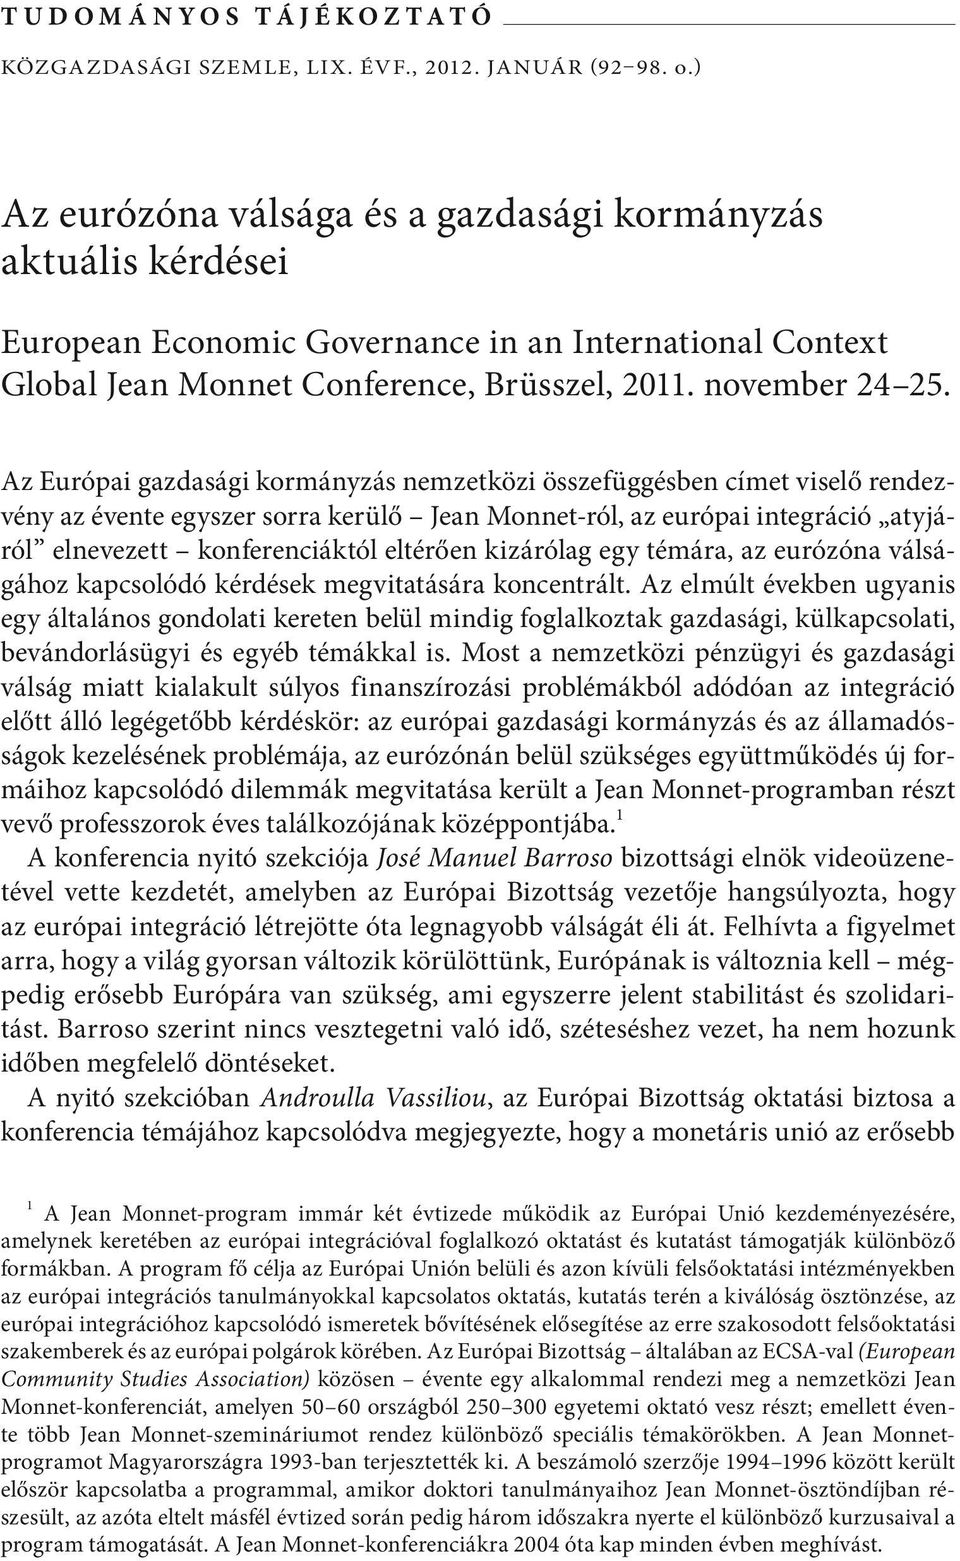 Az Európai gazdasági kormányzás nemzetközi összefüggésben címet viselő rendezvény az évente egyszer sorra kerülő Jean Monnet-ról, az európai integráció atyjáról elnevezett konferenciáktól eltérően